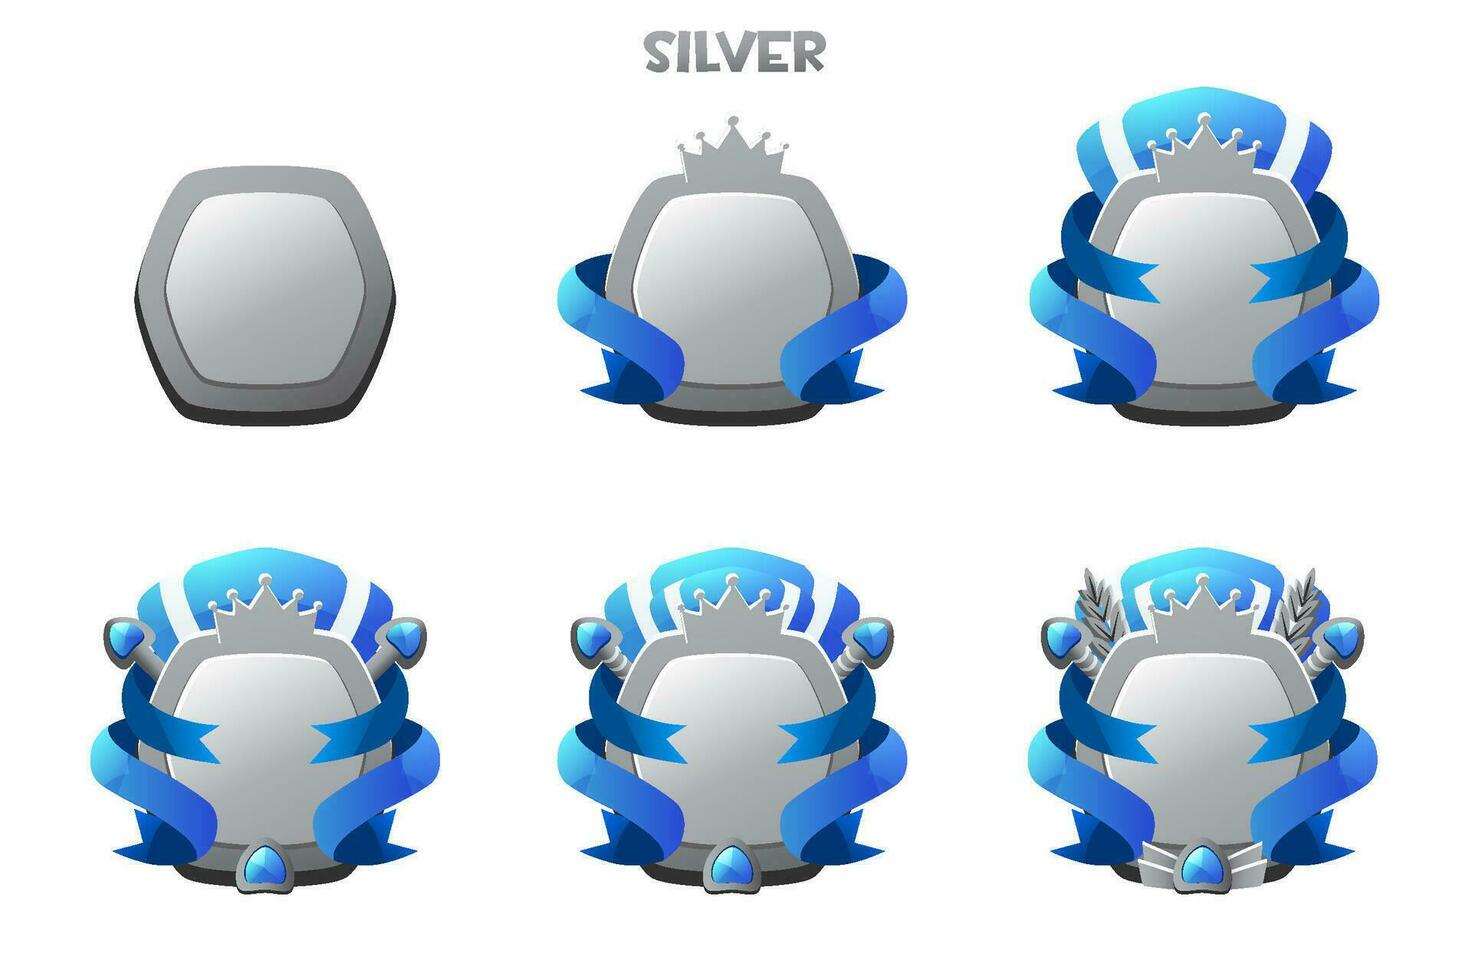 spel rang pärla bricka ui tilldela prestation i vektor. tecknad serie nivå medalj i silver. vektor